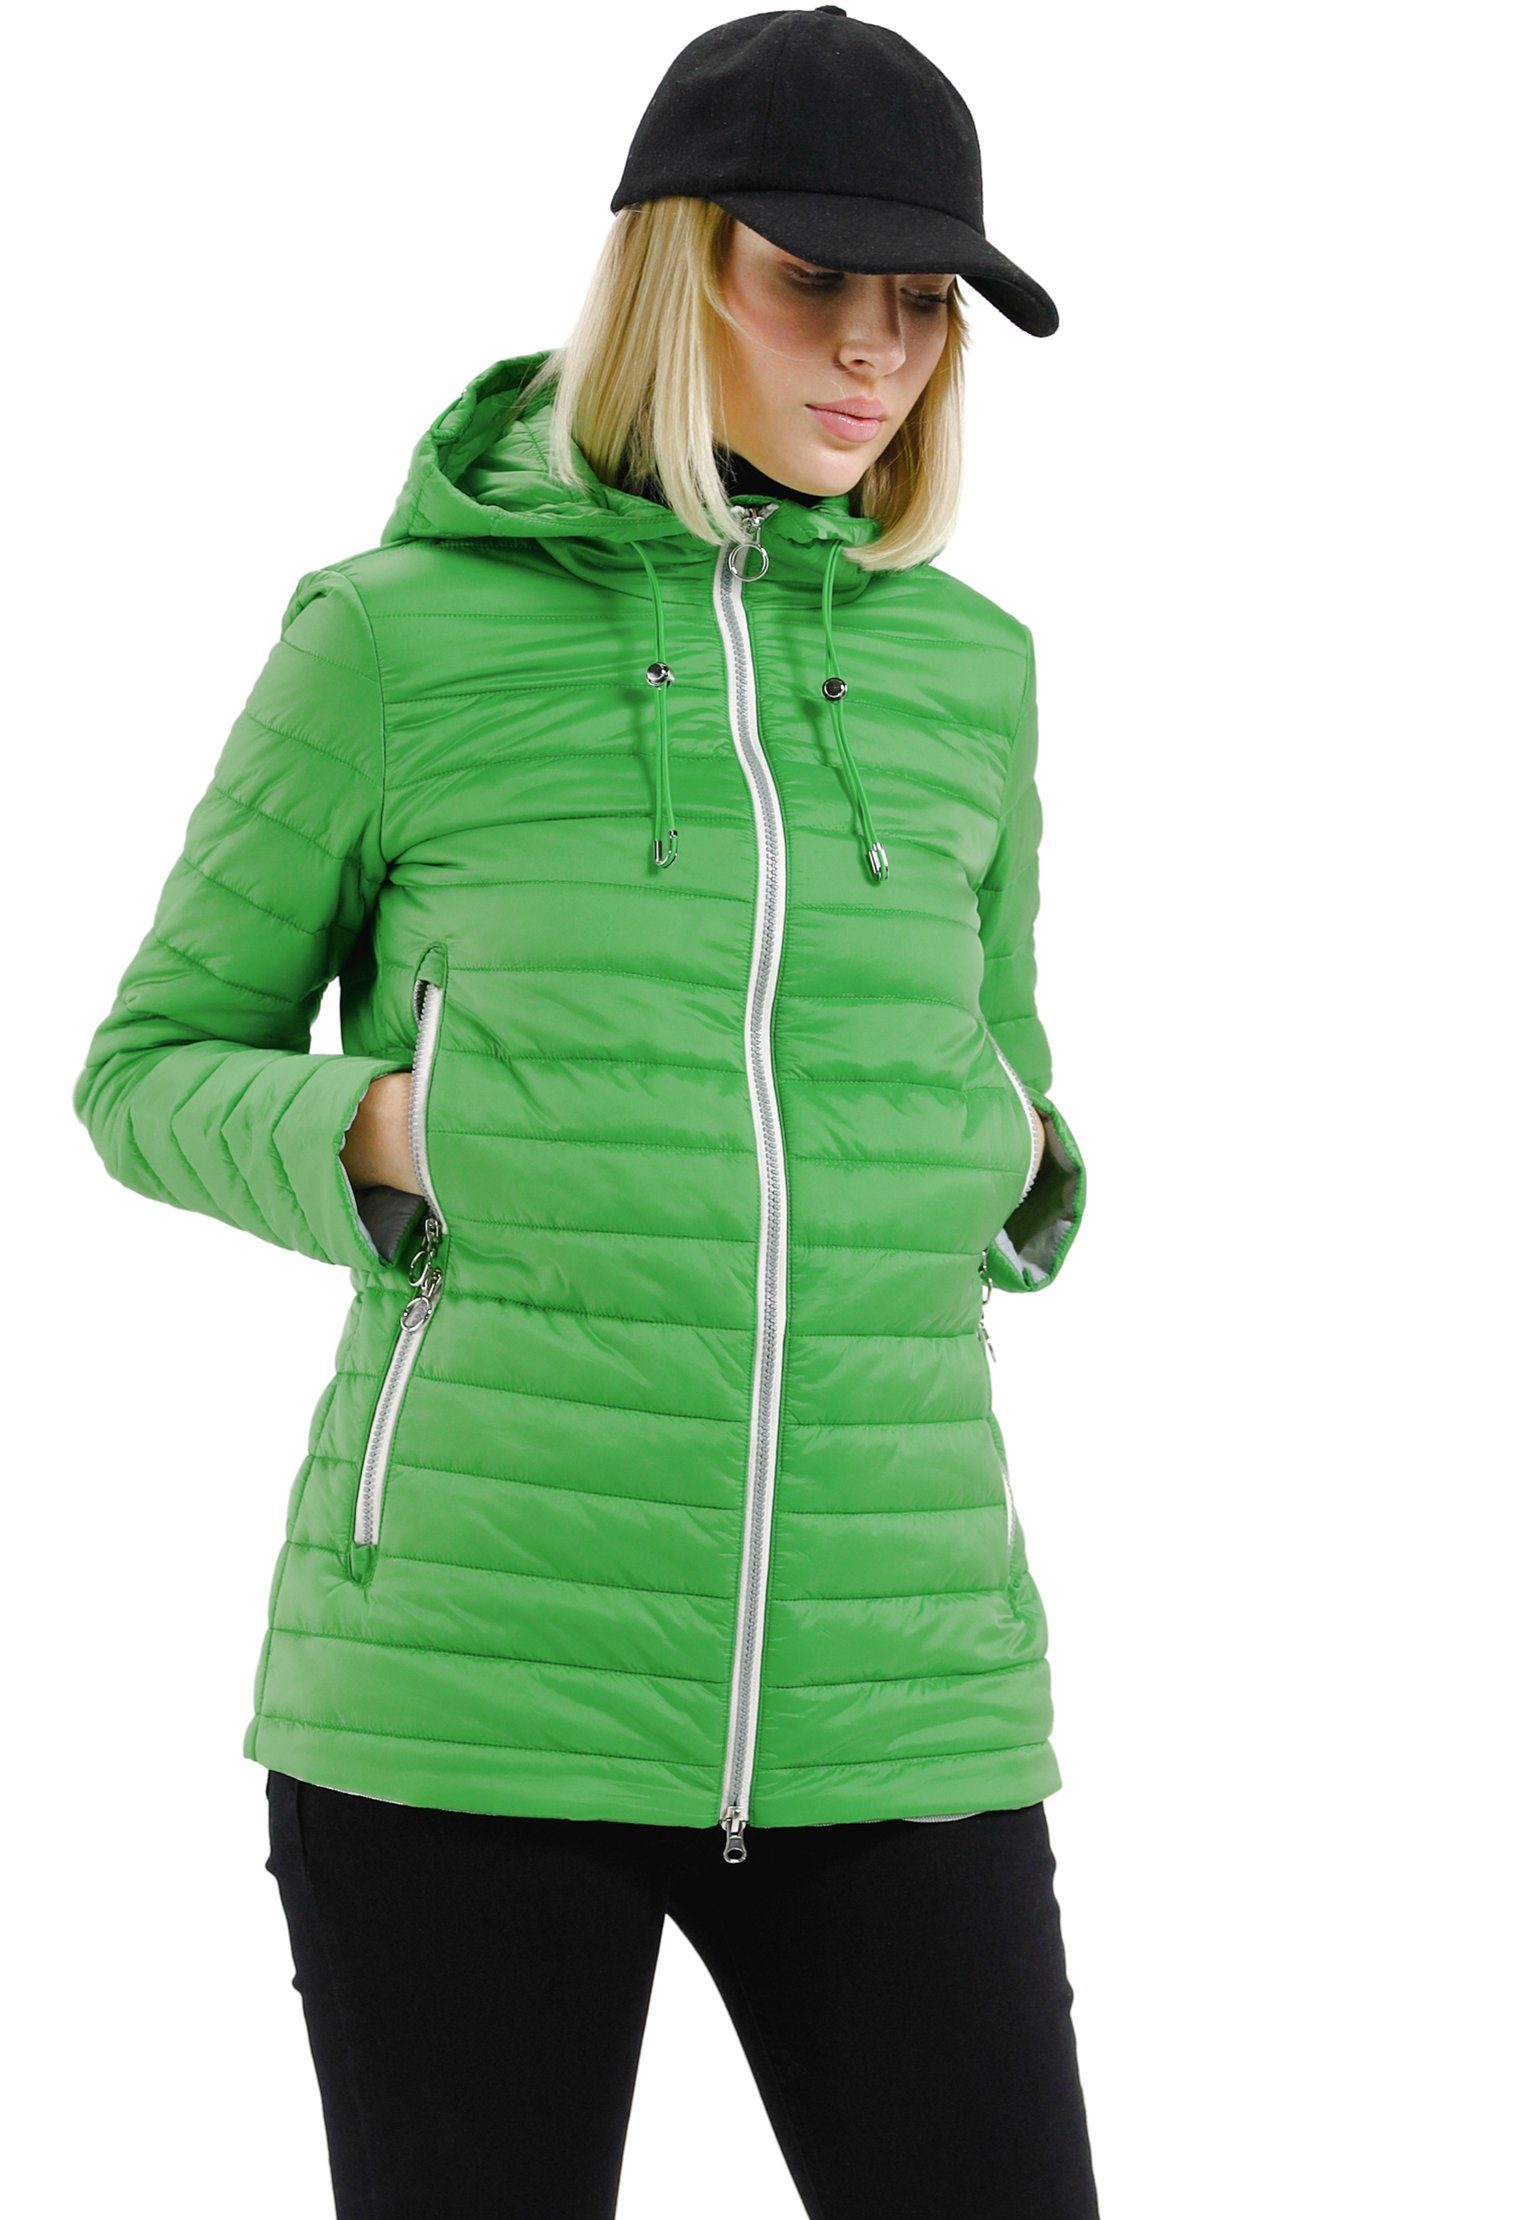 Grüne Jacke online kaufen | OTTO